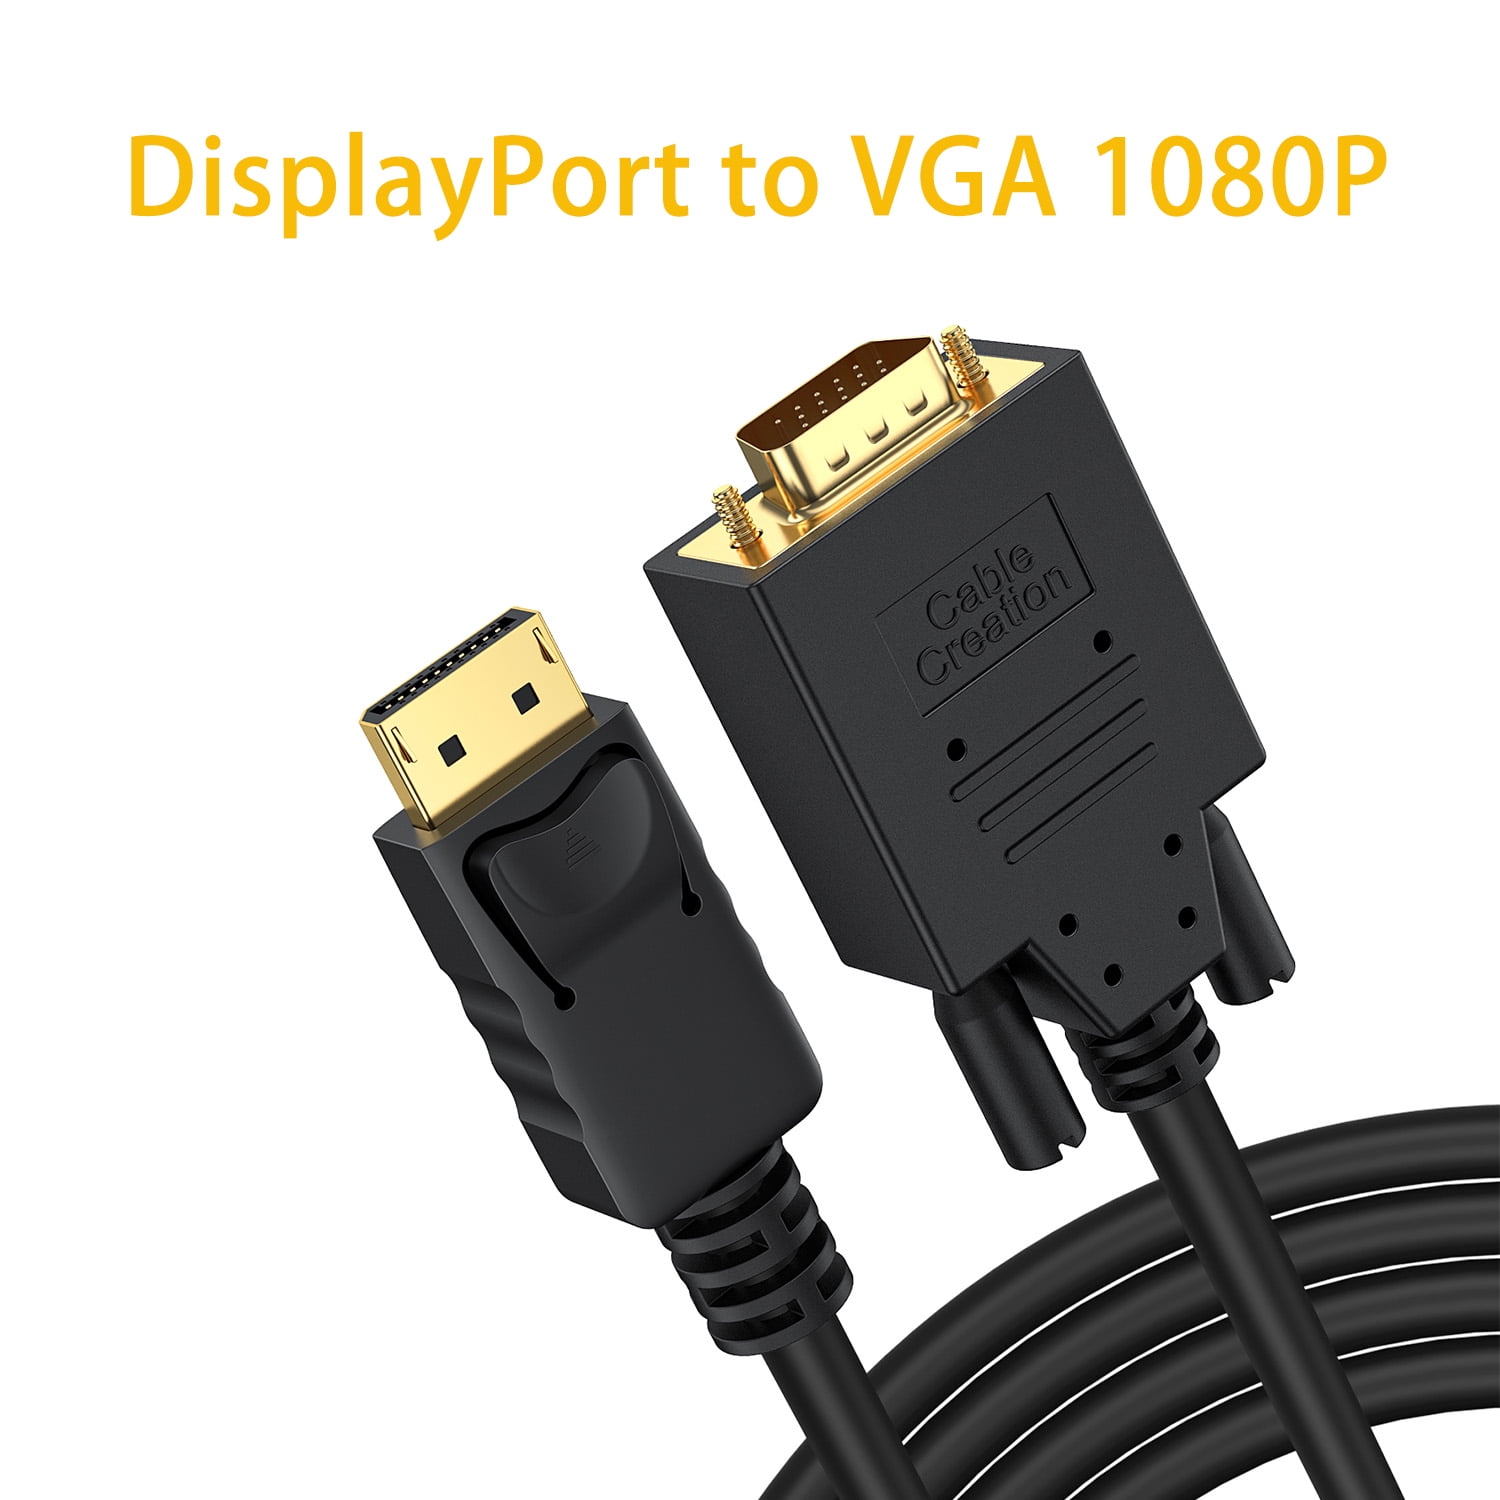 VESA se inventa pegatinas para distinguir los cables DisplayPort 2.0. Ojalá  la idea la usaran el resto de cables